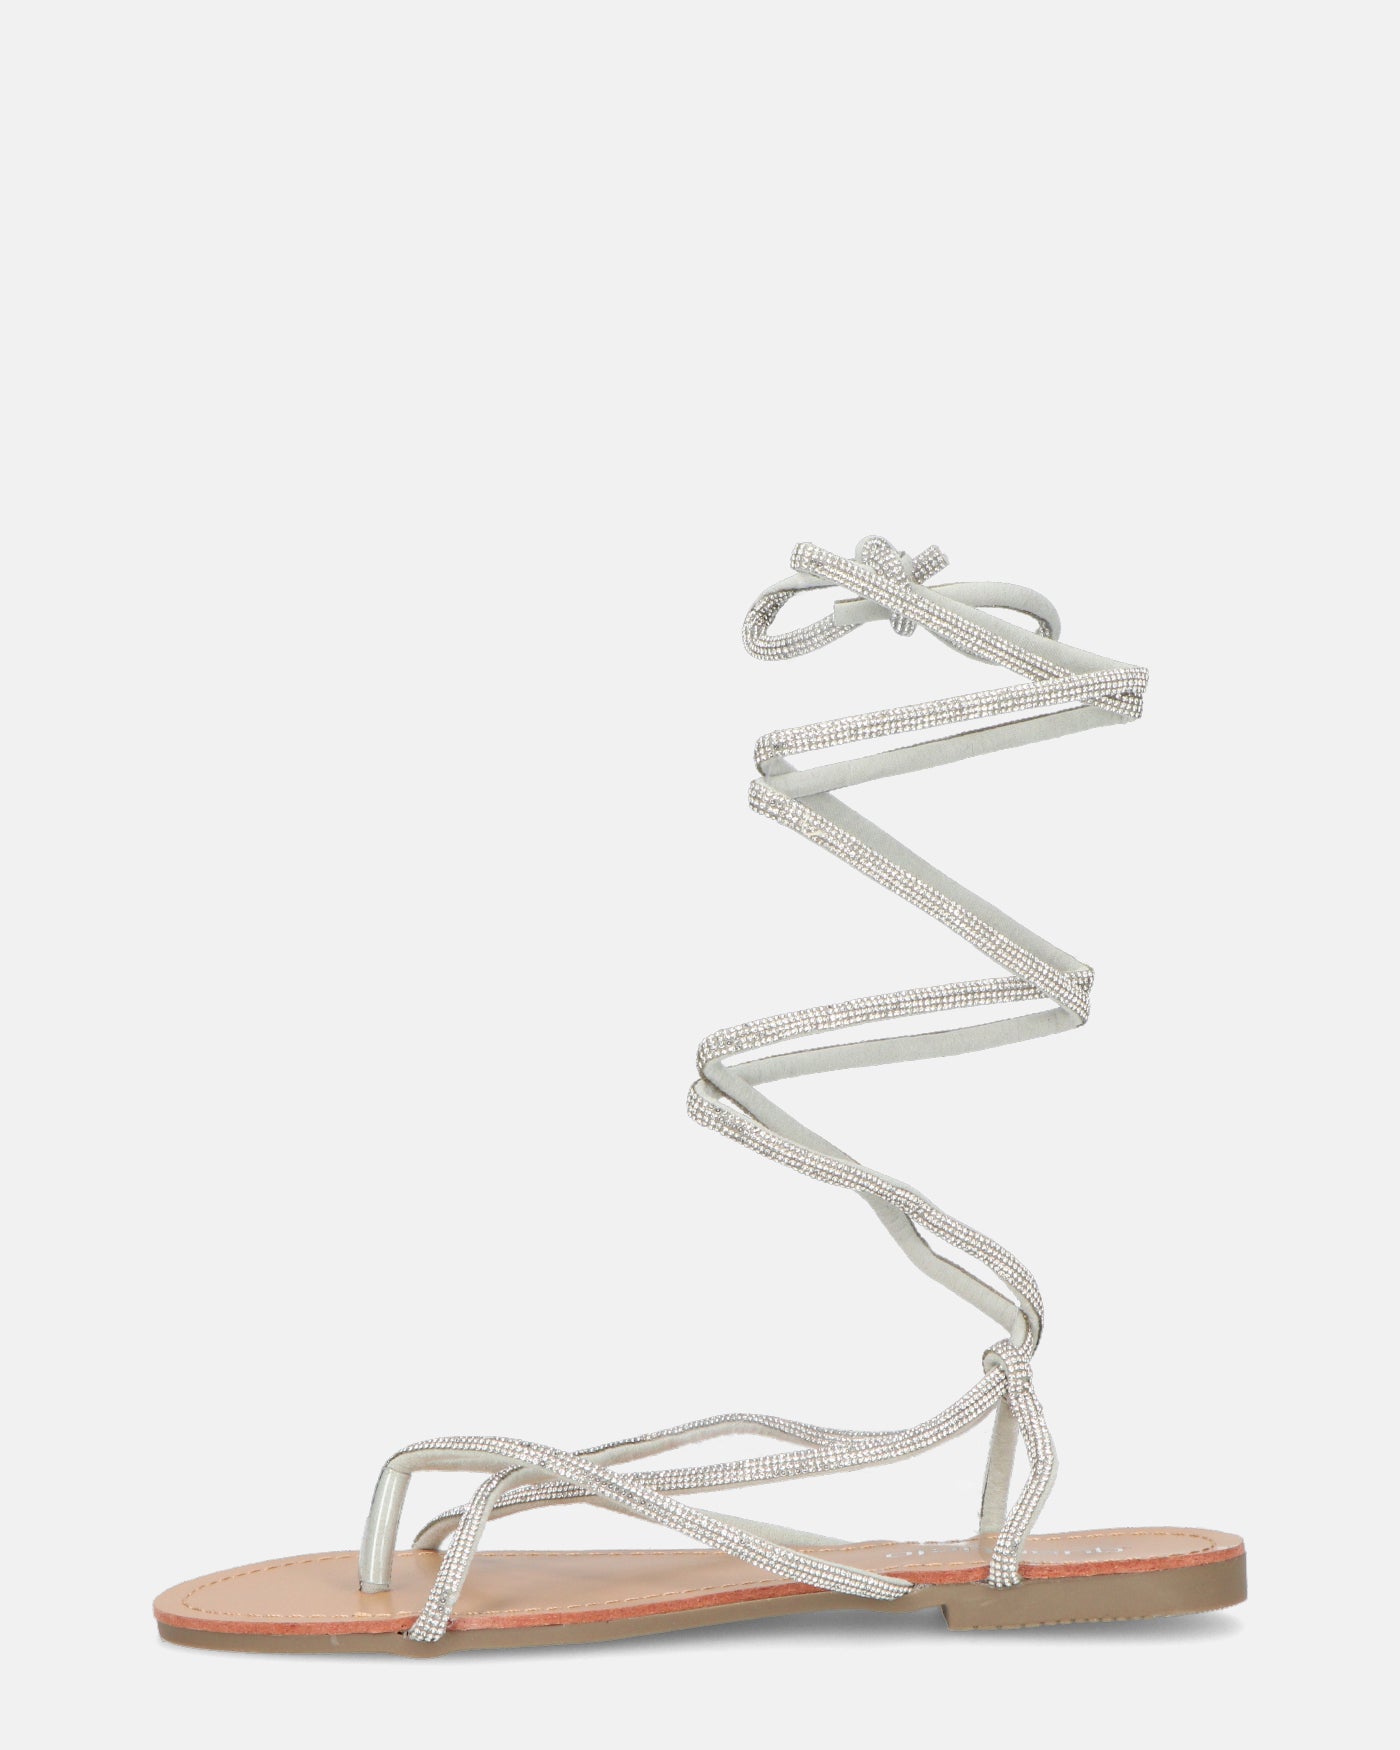 JANIRA - flat sandals with white glitter laces